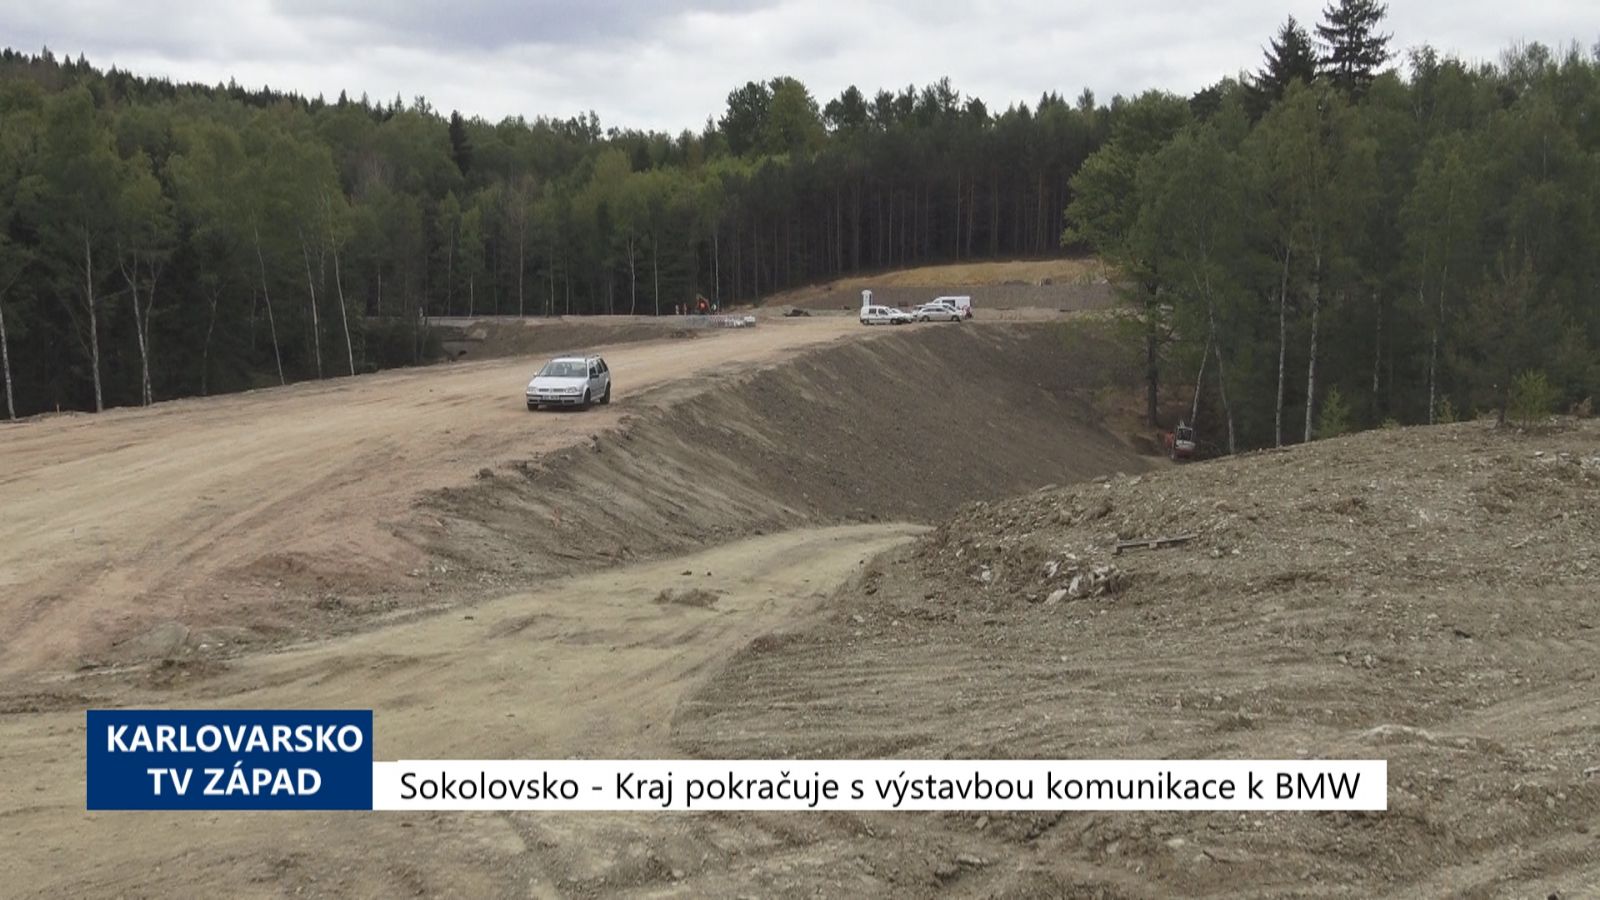 Sokolovsko: Kraj pokračuje s výstavbou komunikace k BMW (TV Západ)